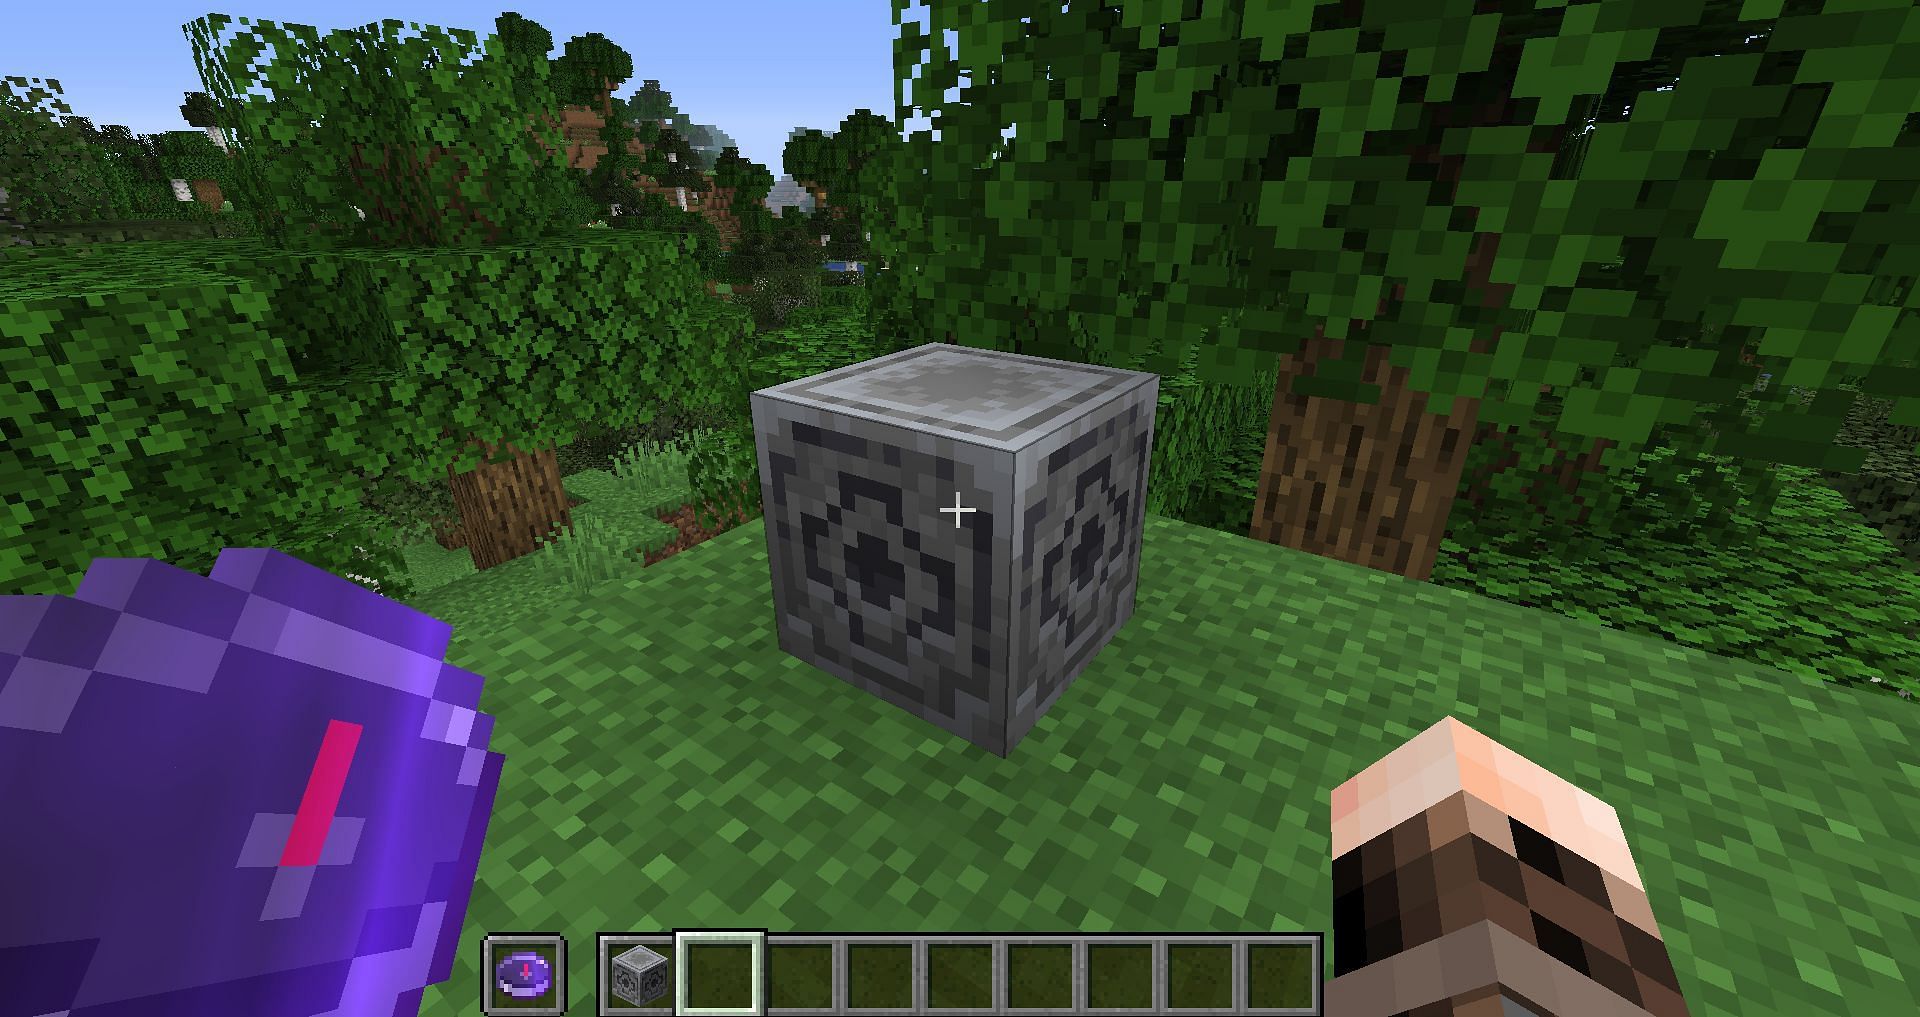 Lodestone in Minecraft (Image via Minecraft)